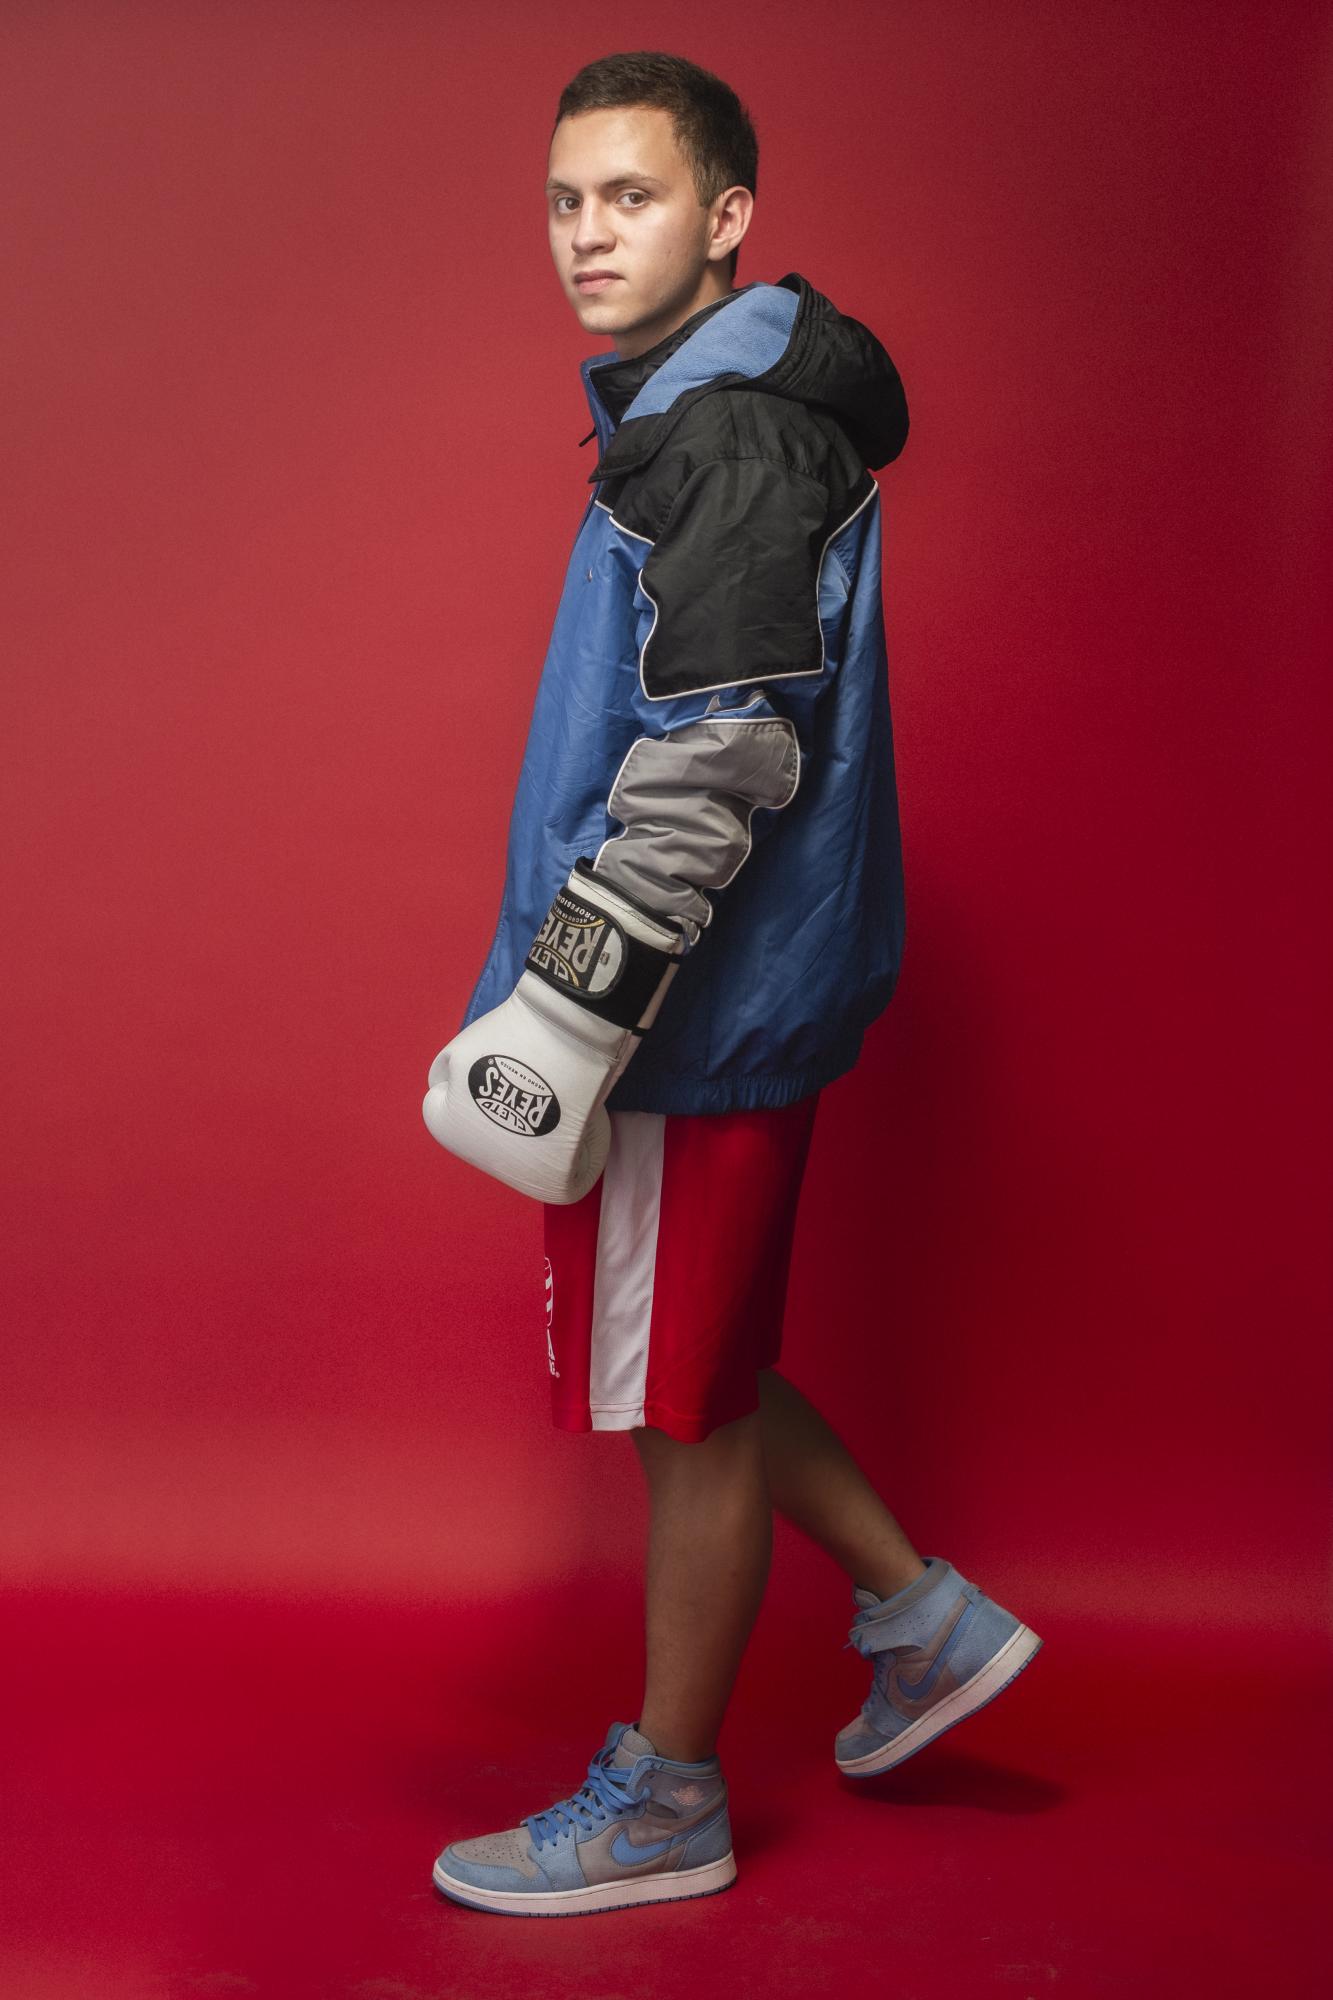 $!A los 12 años, su pasión por el boxeo comenzó gracias a su padre.